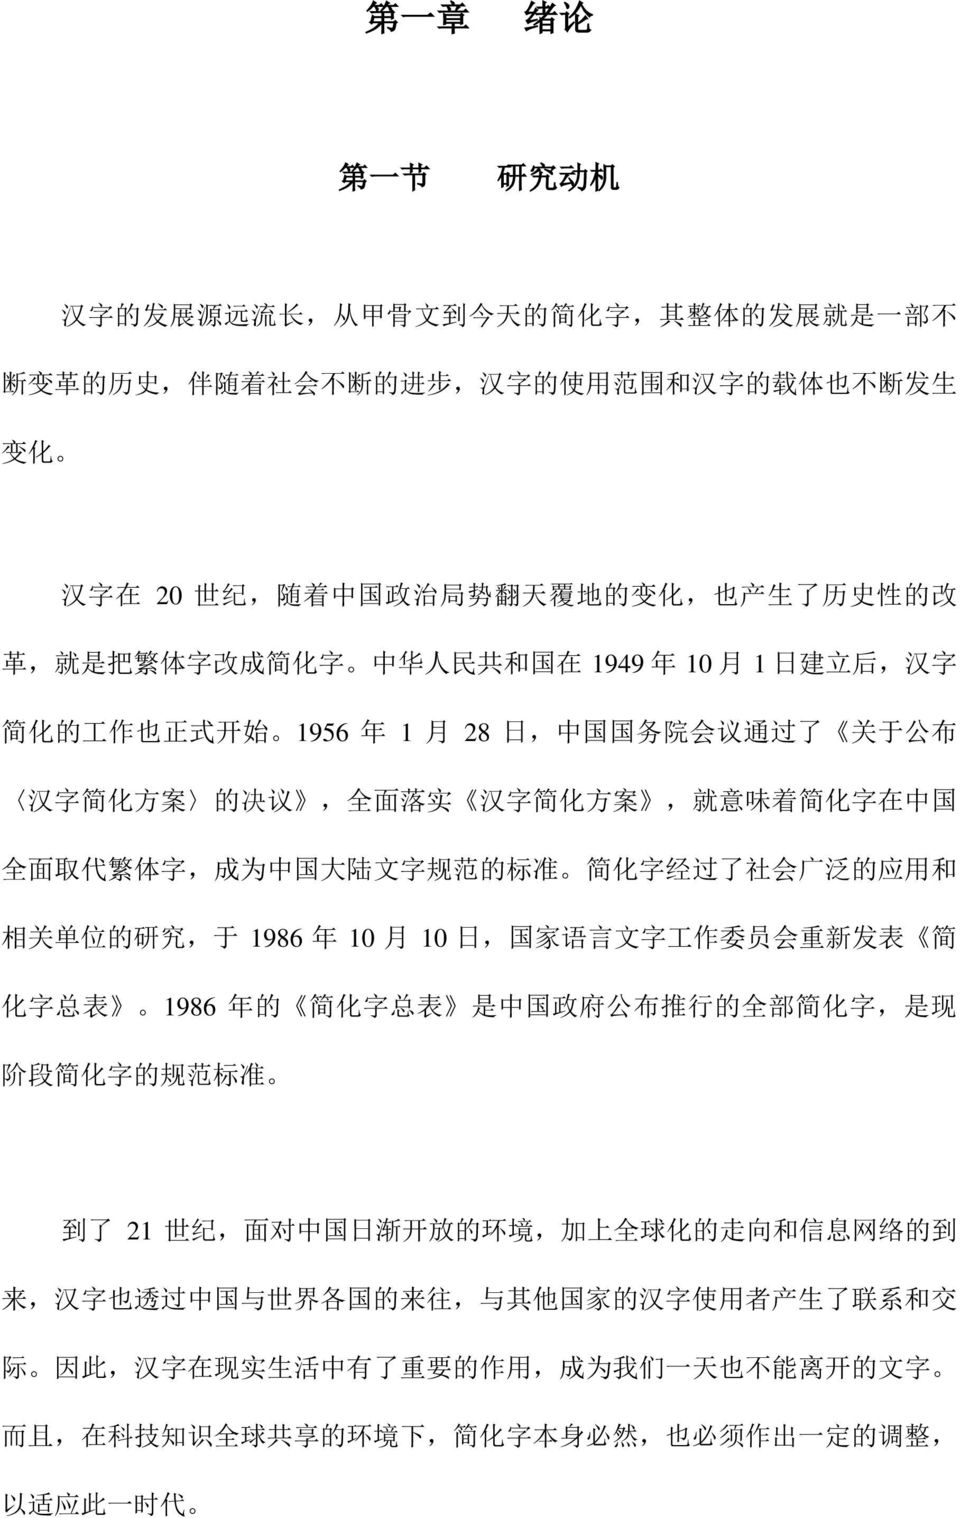 意 味 着 简 化 字 在 中 国 全 面 取 代 繁 体 字, 成 为 中 国 大 陆 文 字 规 范 的 标 准 简 化 字 经 过 了 社 会 广 泛 的 应 用 和 相 关 单 位 的 研 究, 于 1986 年 10 月 10 日, 国 家 语 言 文 字 工 作 委 员 会 重 新 发 表 简 化 字 总 表 1986 年 的 简 化 字 总 表 是 中 国 政 府 公 布 推 行